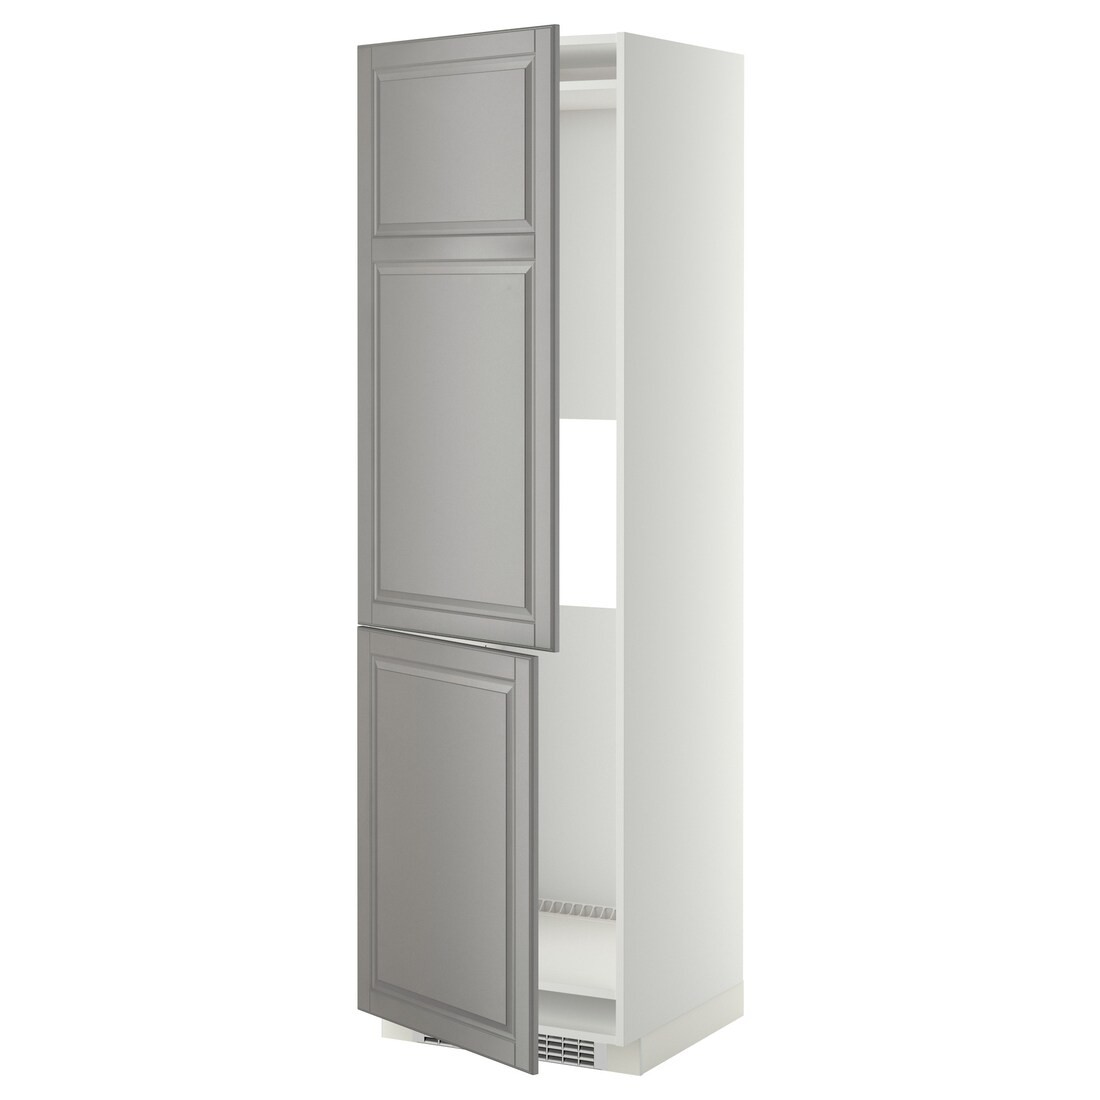 IKEA METOD МЕТОД Высокий шкаф для холодильника / морозильника, белый / Bodbyn серый, 60x60x200 см 39925651 399.256.51